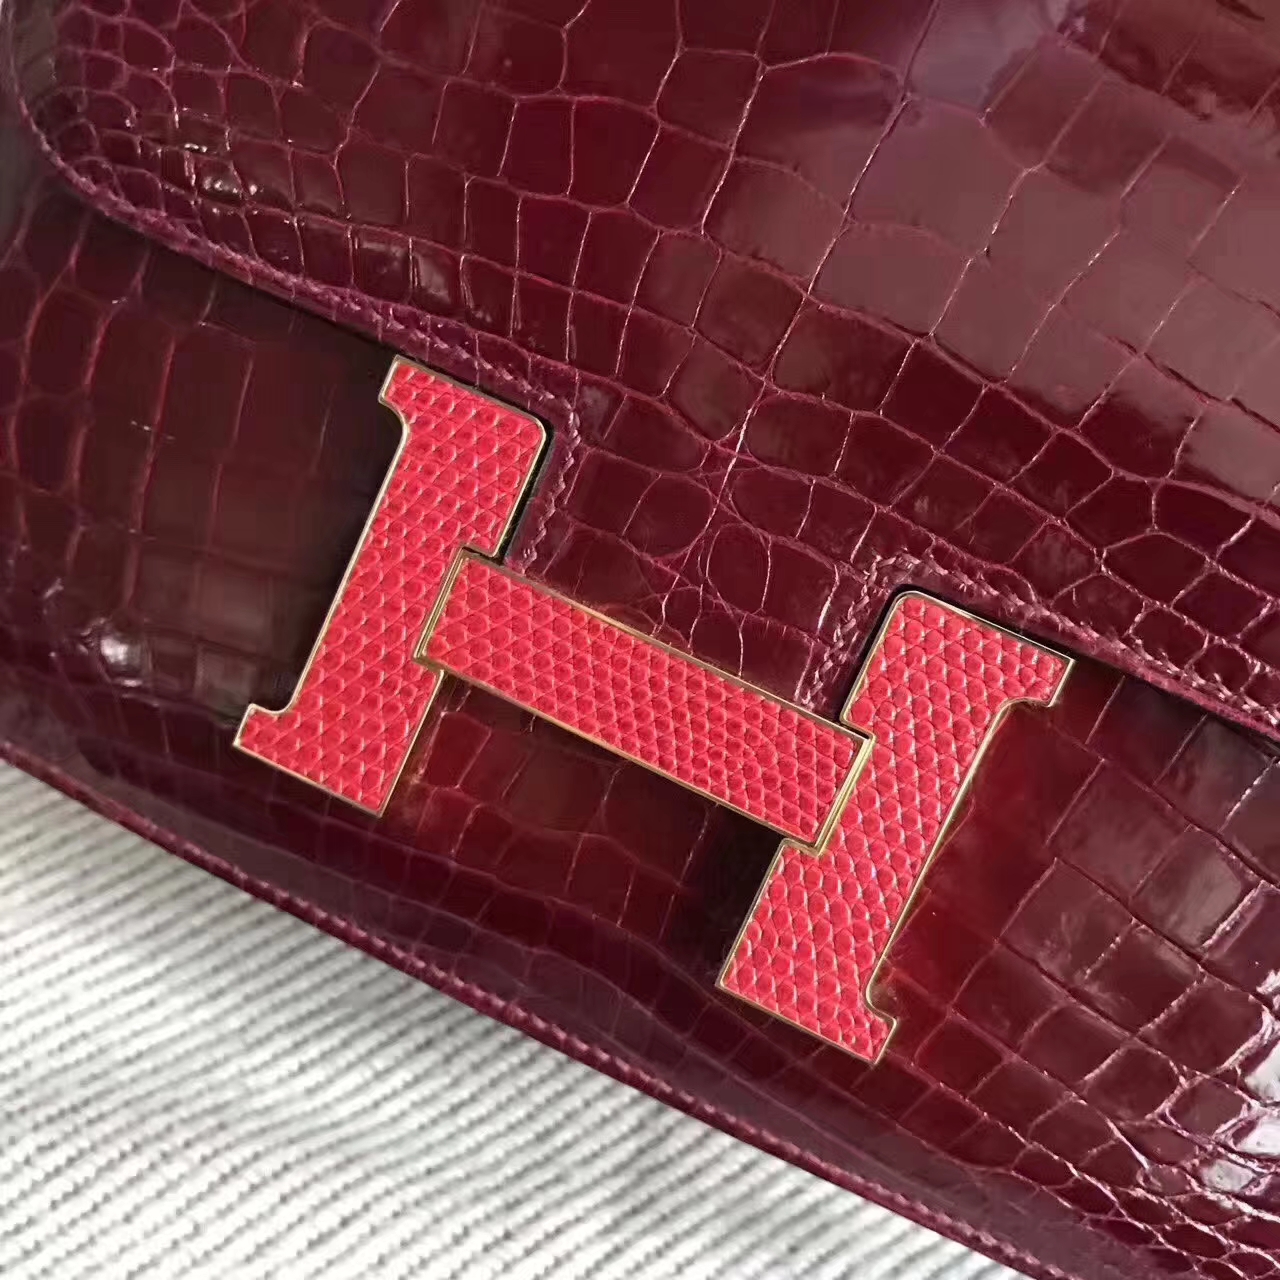 Hermes CK57 Bordeaux Red Shiny Crocodile Leather Constance Bag 23cm